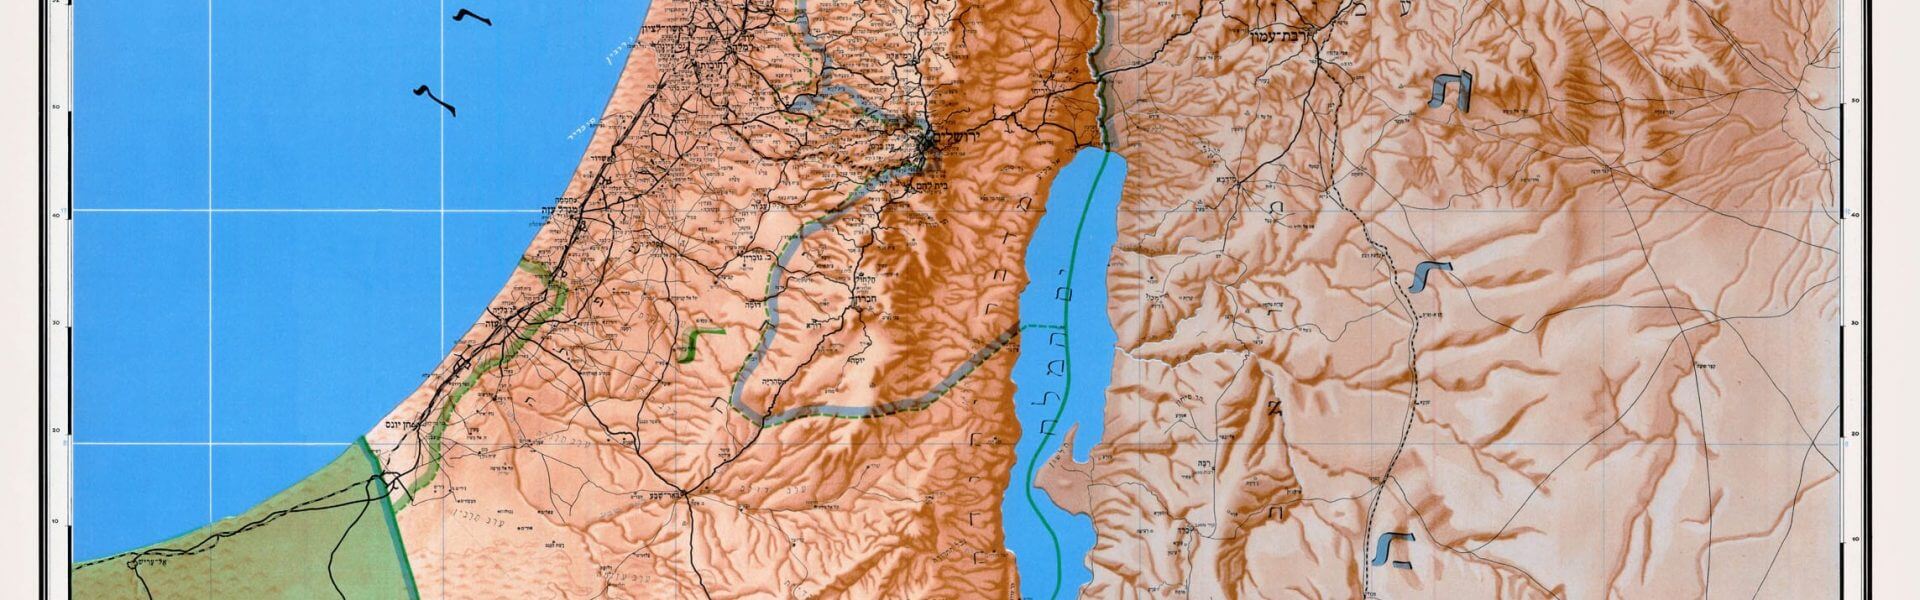 תמונה ראשית: מפת תבליט של ארץ ישראל שיצאה בשנת 1949 בהוצאת יוסף שפירא. מתוך ויקישיתוף, shaul shapiro [CC BY-SA 3.0]